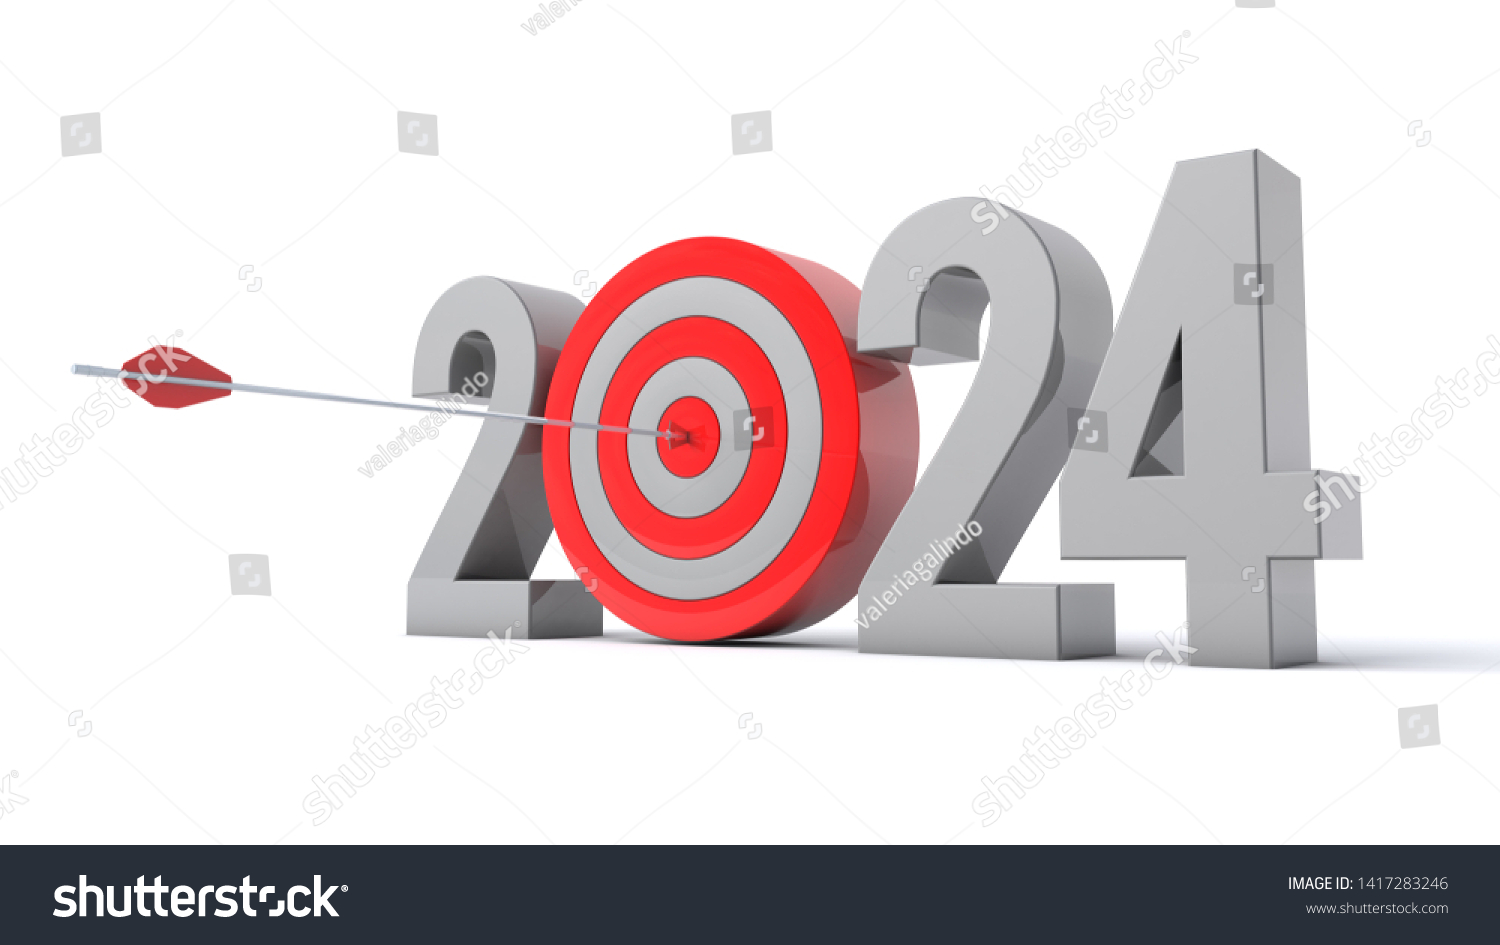 3d Illustration Number 2024 Target Concept Stock Illustration 1417283246 Shutterstock